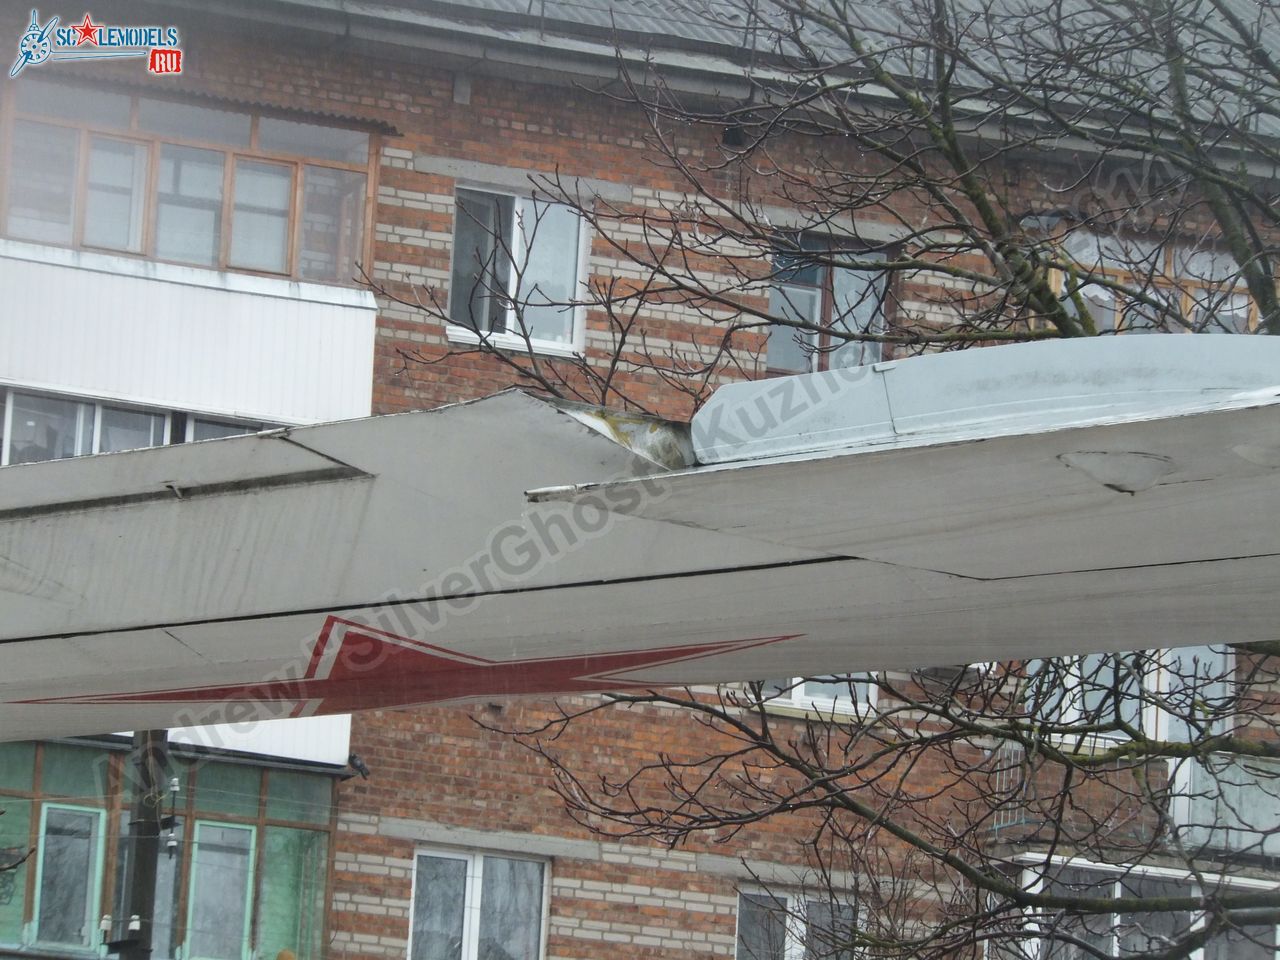 Tu-16_Badger_Smolensk_0302.jpg